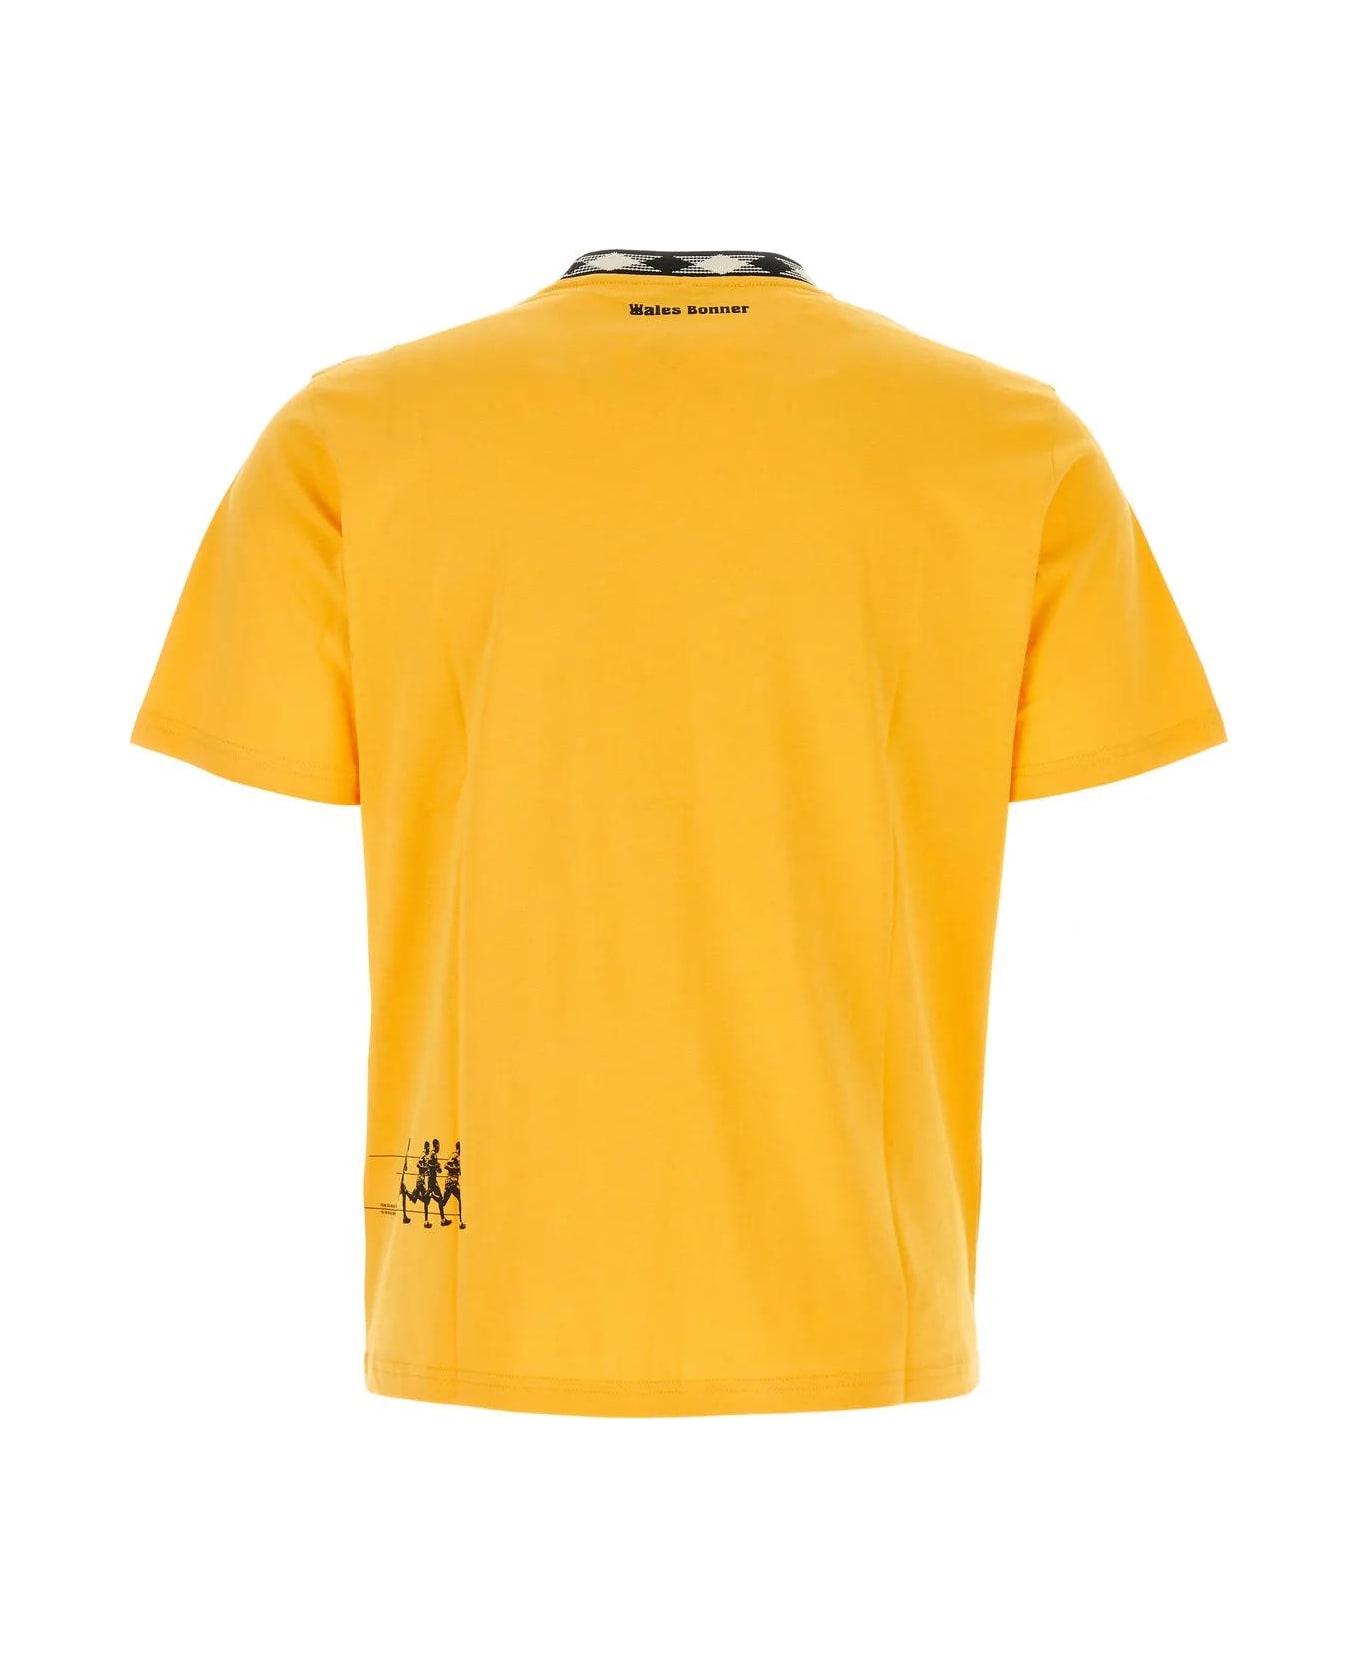 Wales Bonner Yellow Cotton Endurance T-shirt - Giallo シャツ